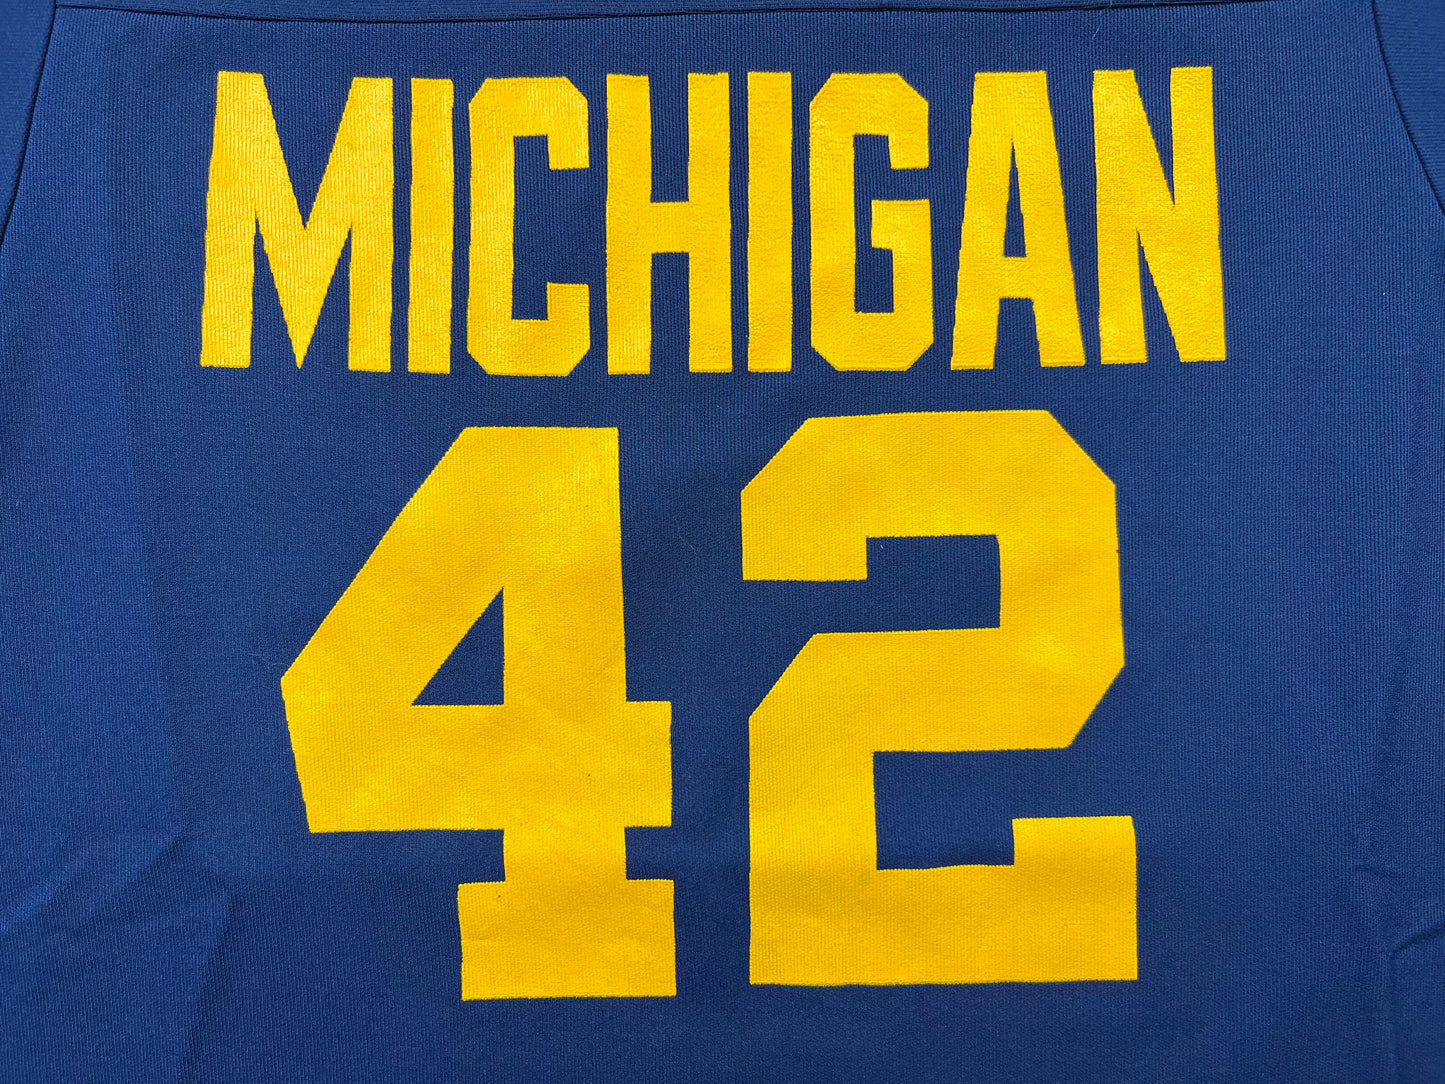 Michigan #42 Football Jersey